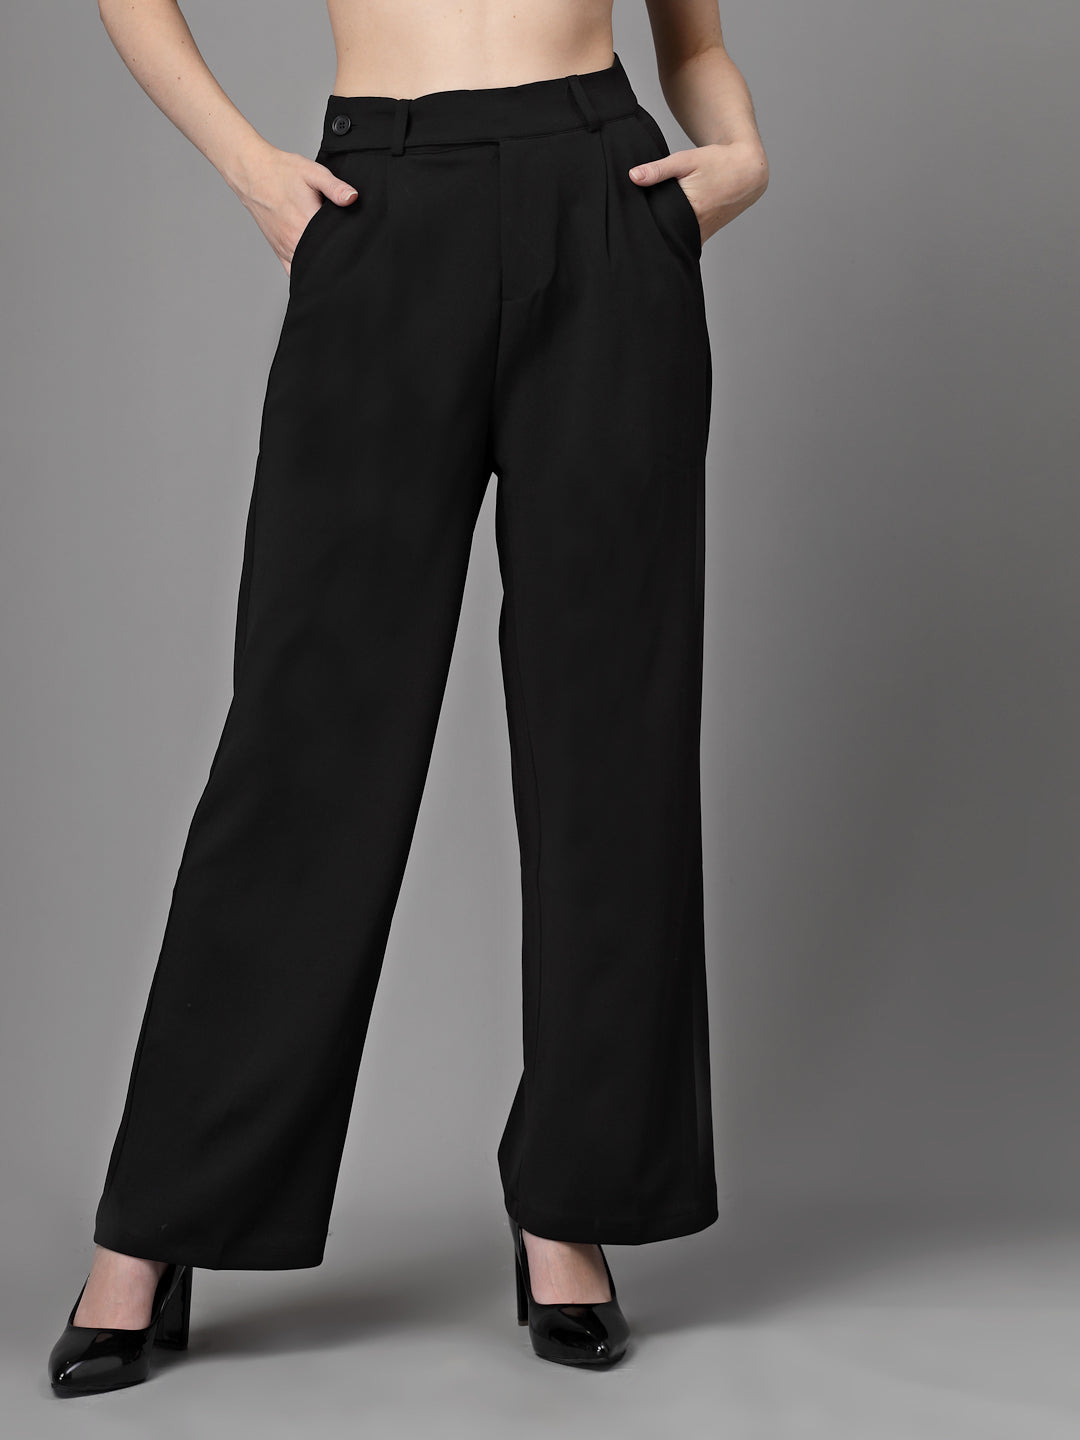 Wide leg pants in black | Intermod Workwear